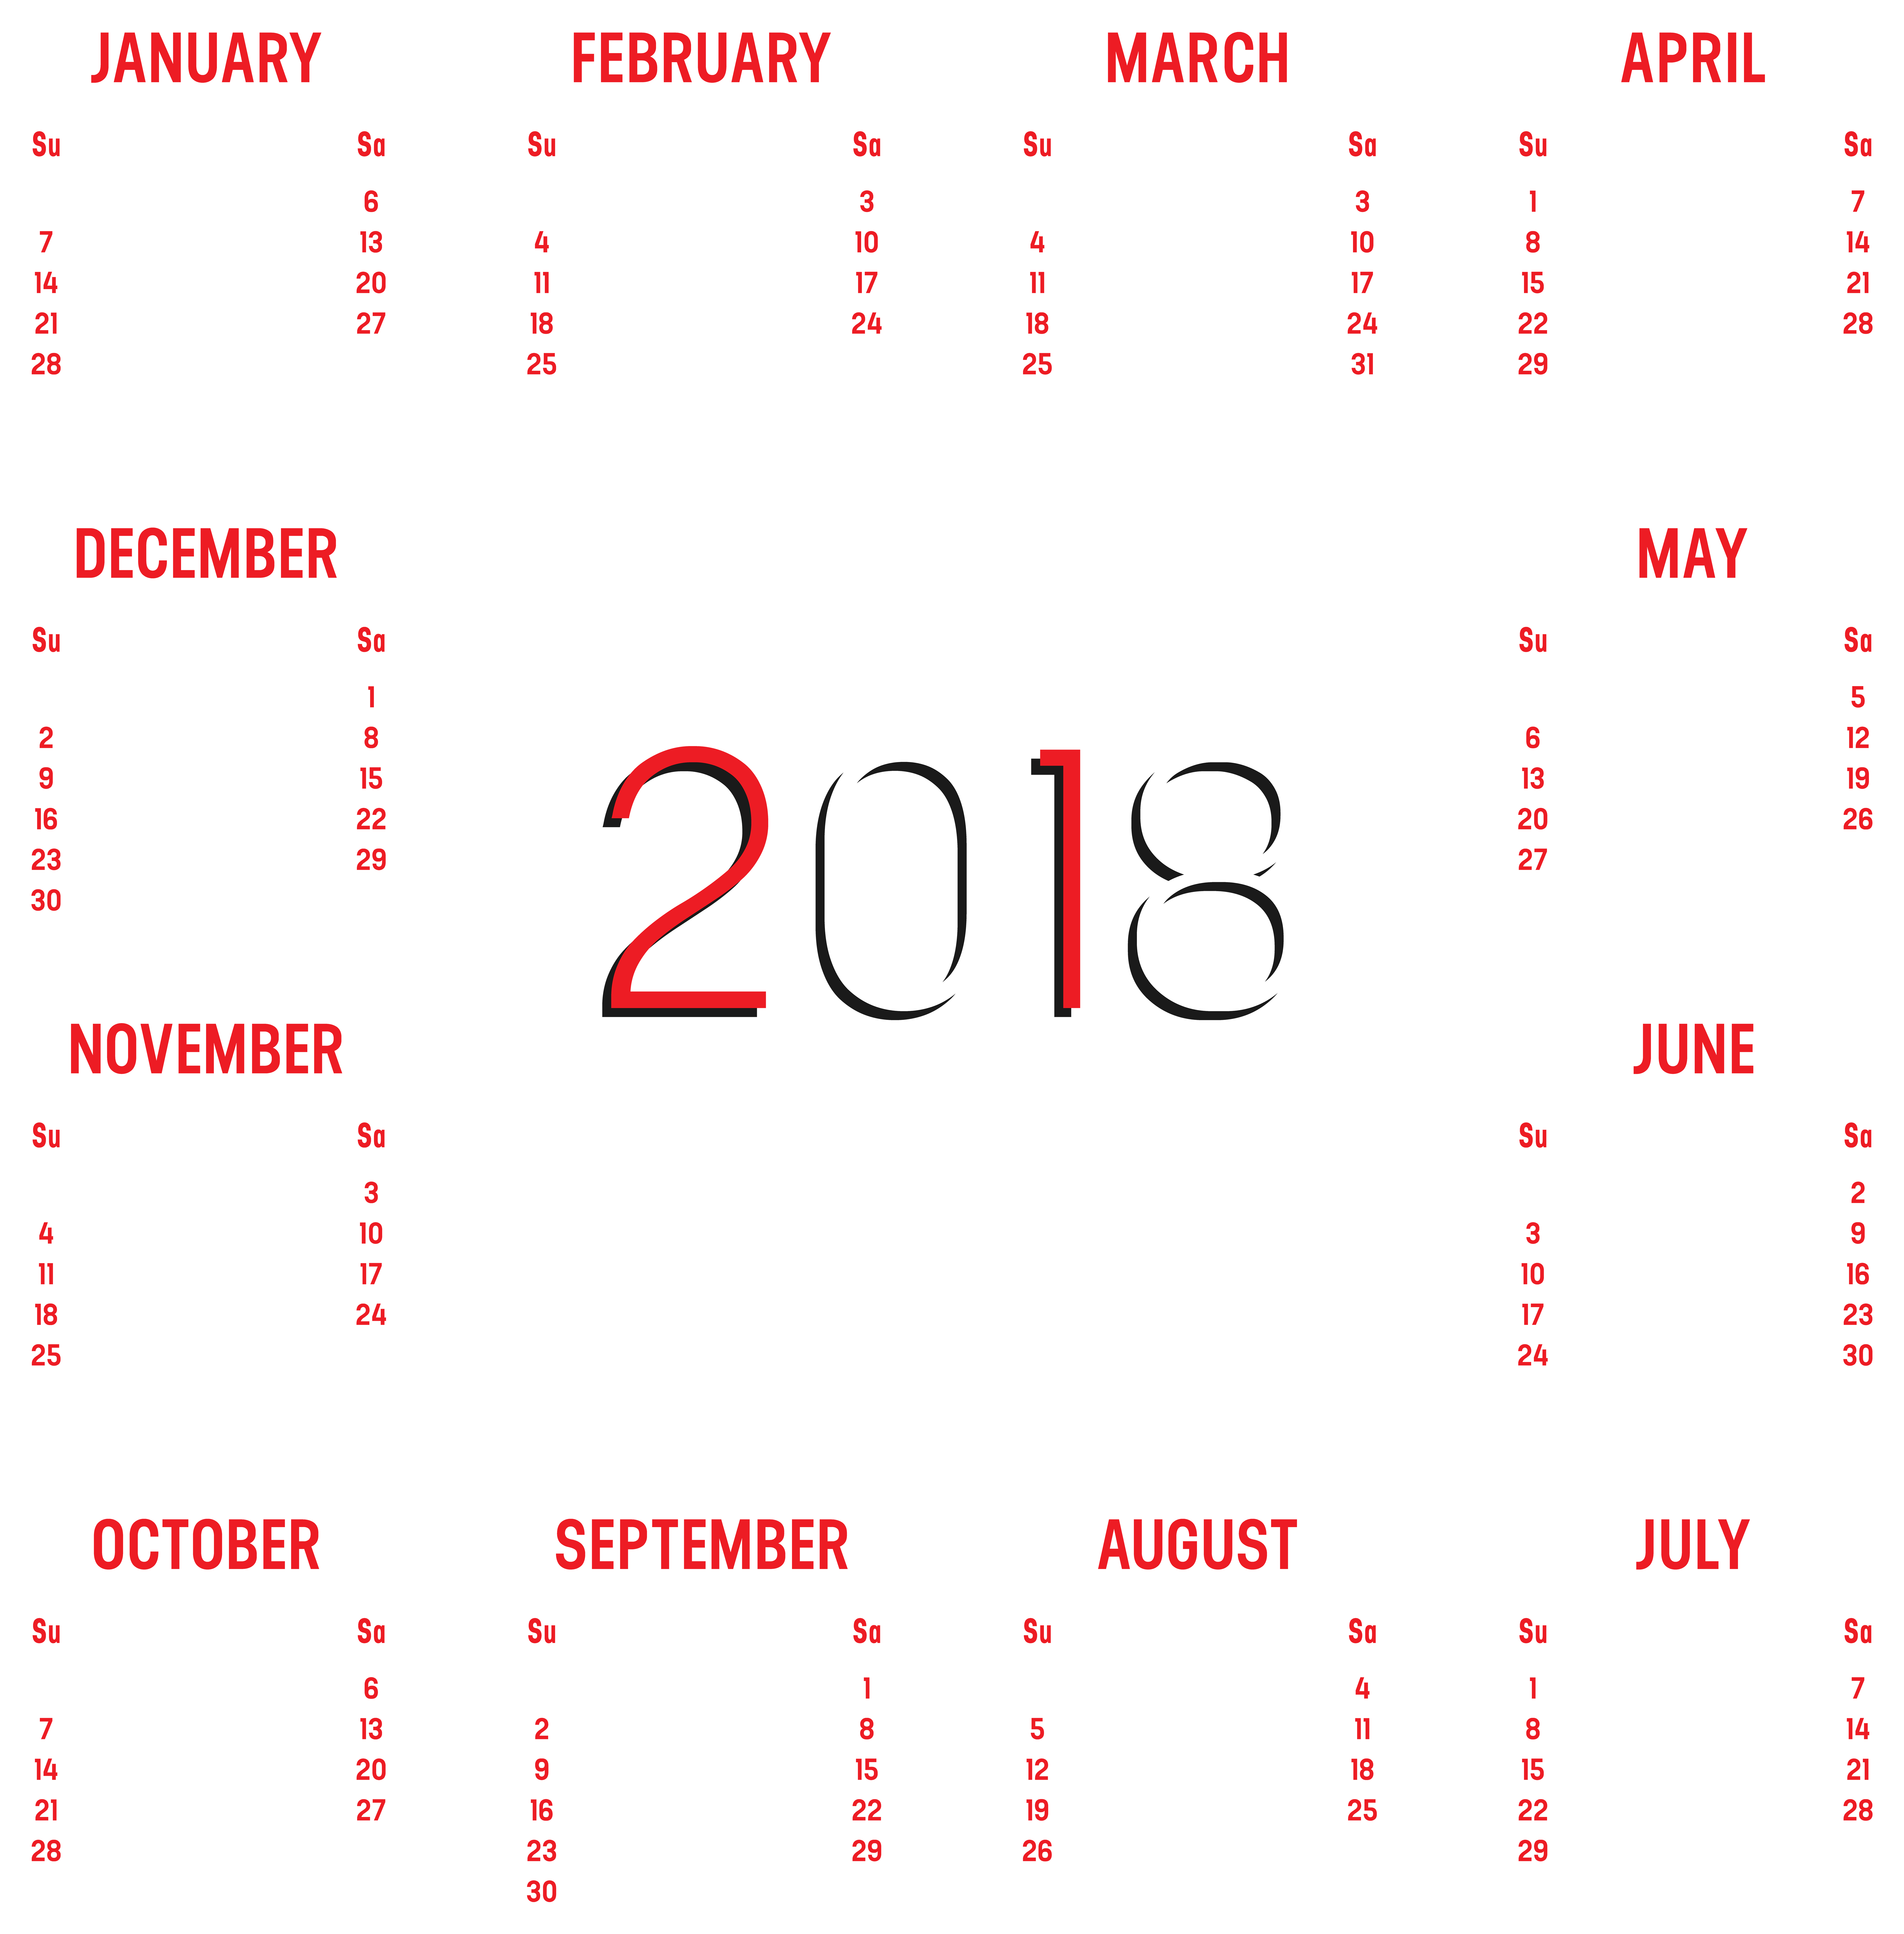 schedule clipart 2018 calendar